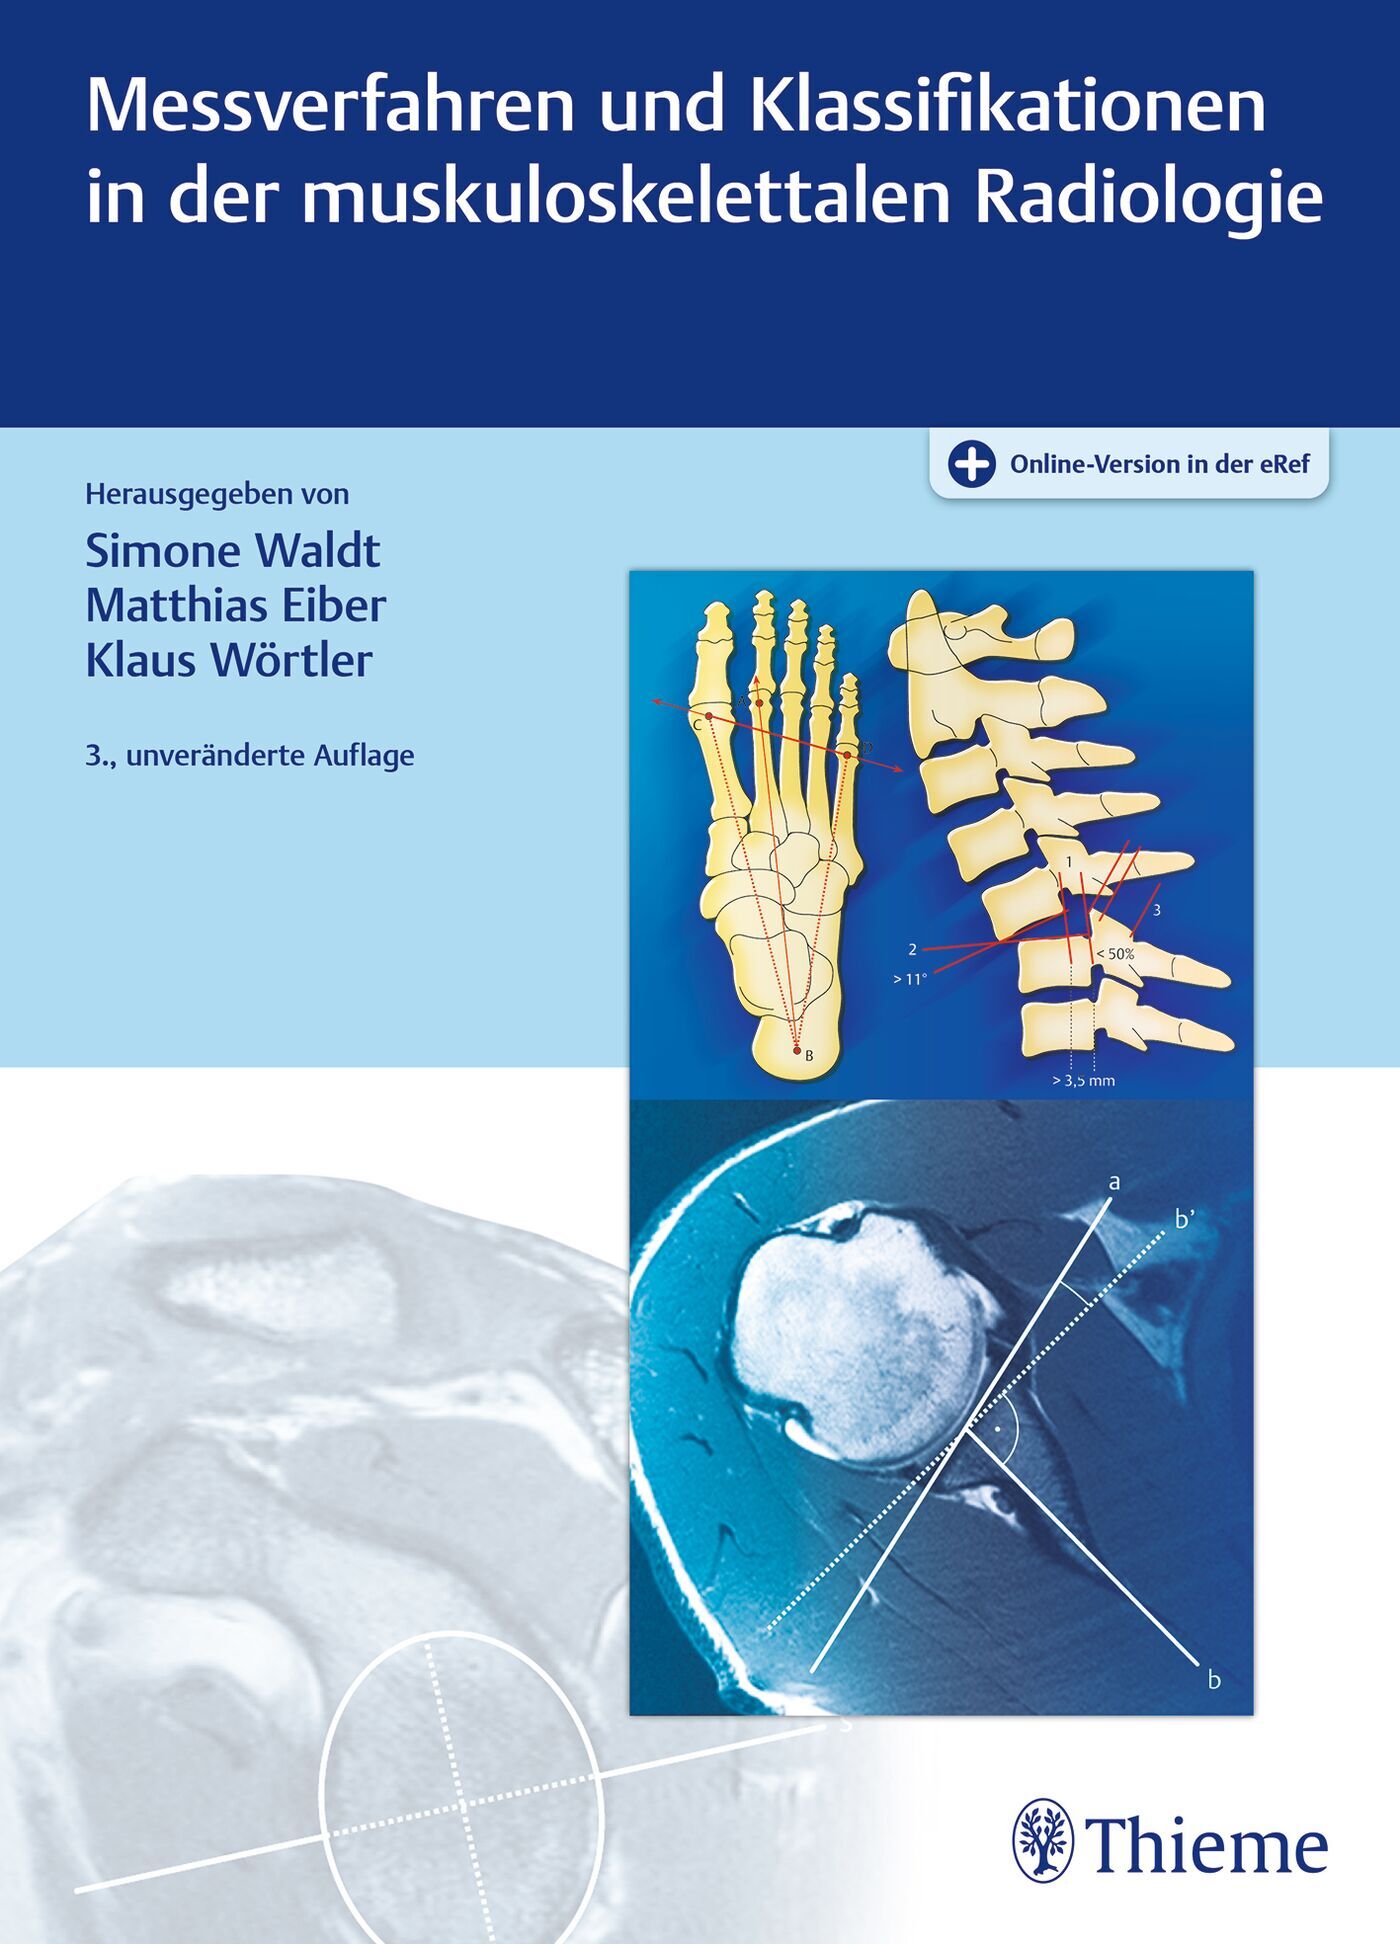 Messverfahren und Klassifikationen in der muskuloskelettalen Radiologie, 9783132454651